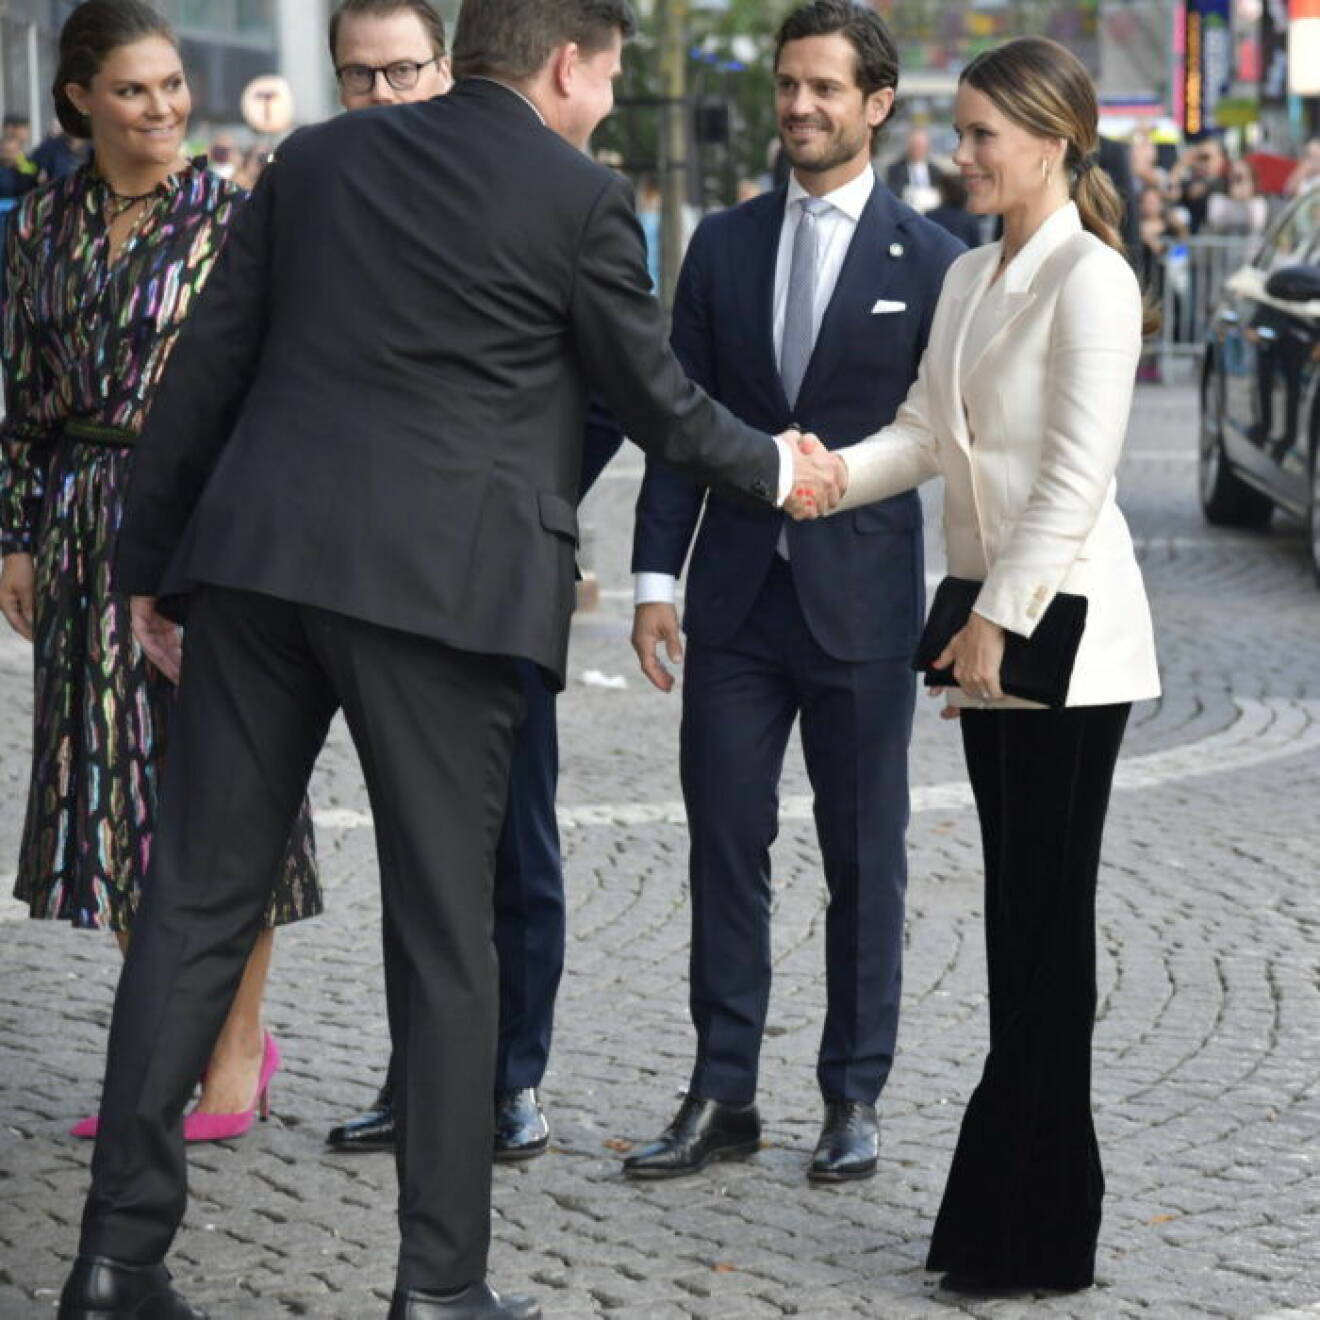 Sofia tar i hand med talmannen, Victoria, Daniel och Carl Philip ser på